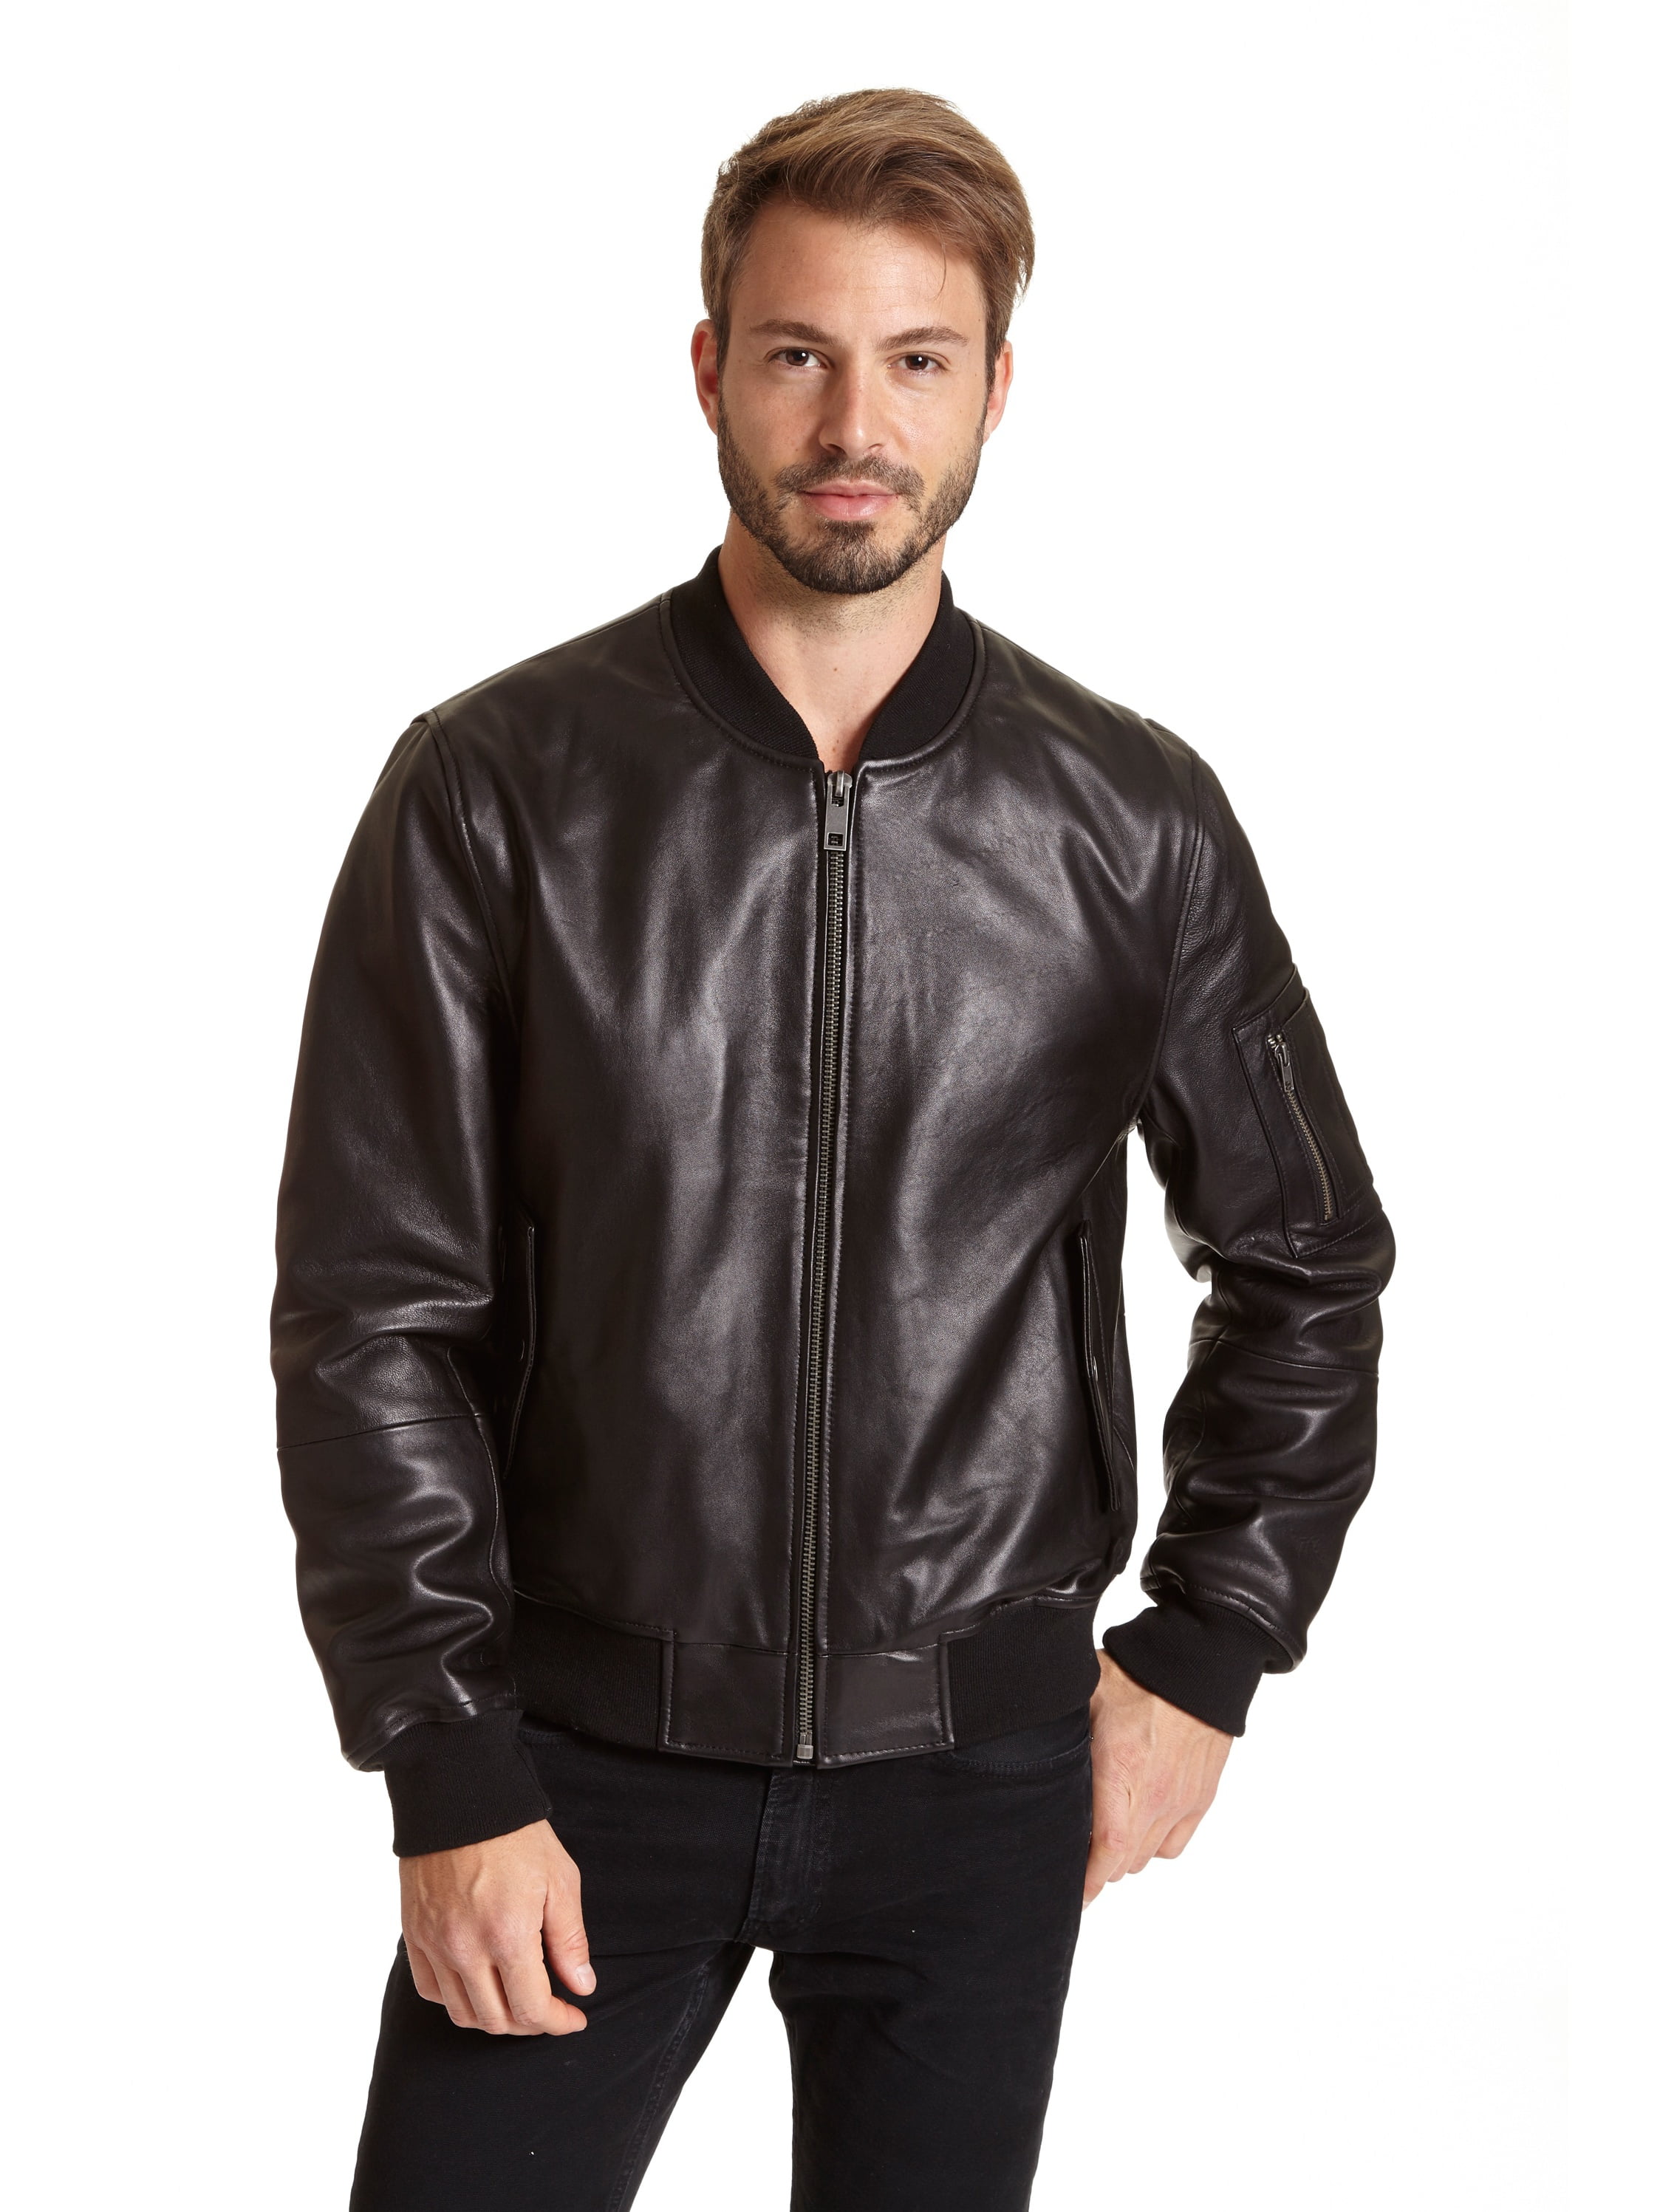 Excelled - EXcelled Men's Leather Bomber Jacket - Walmart.com - Walmart.com